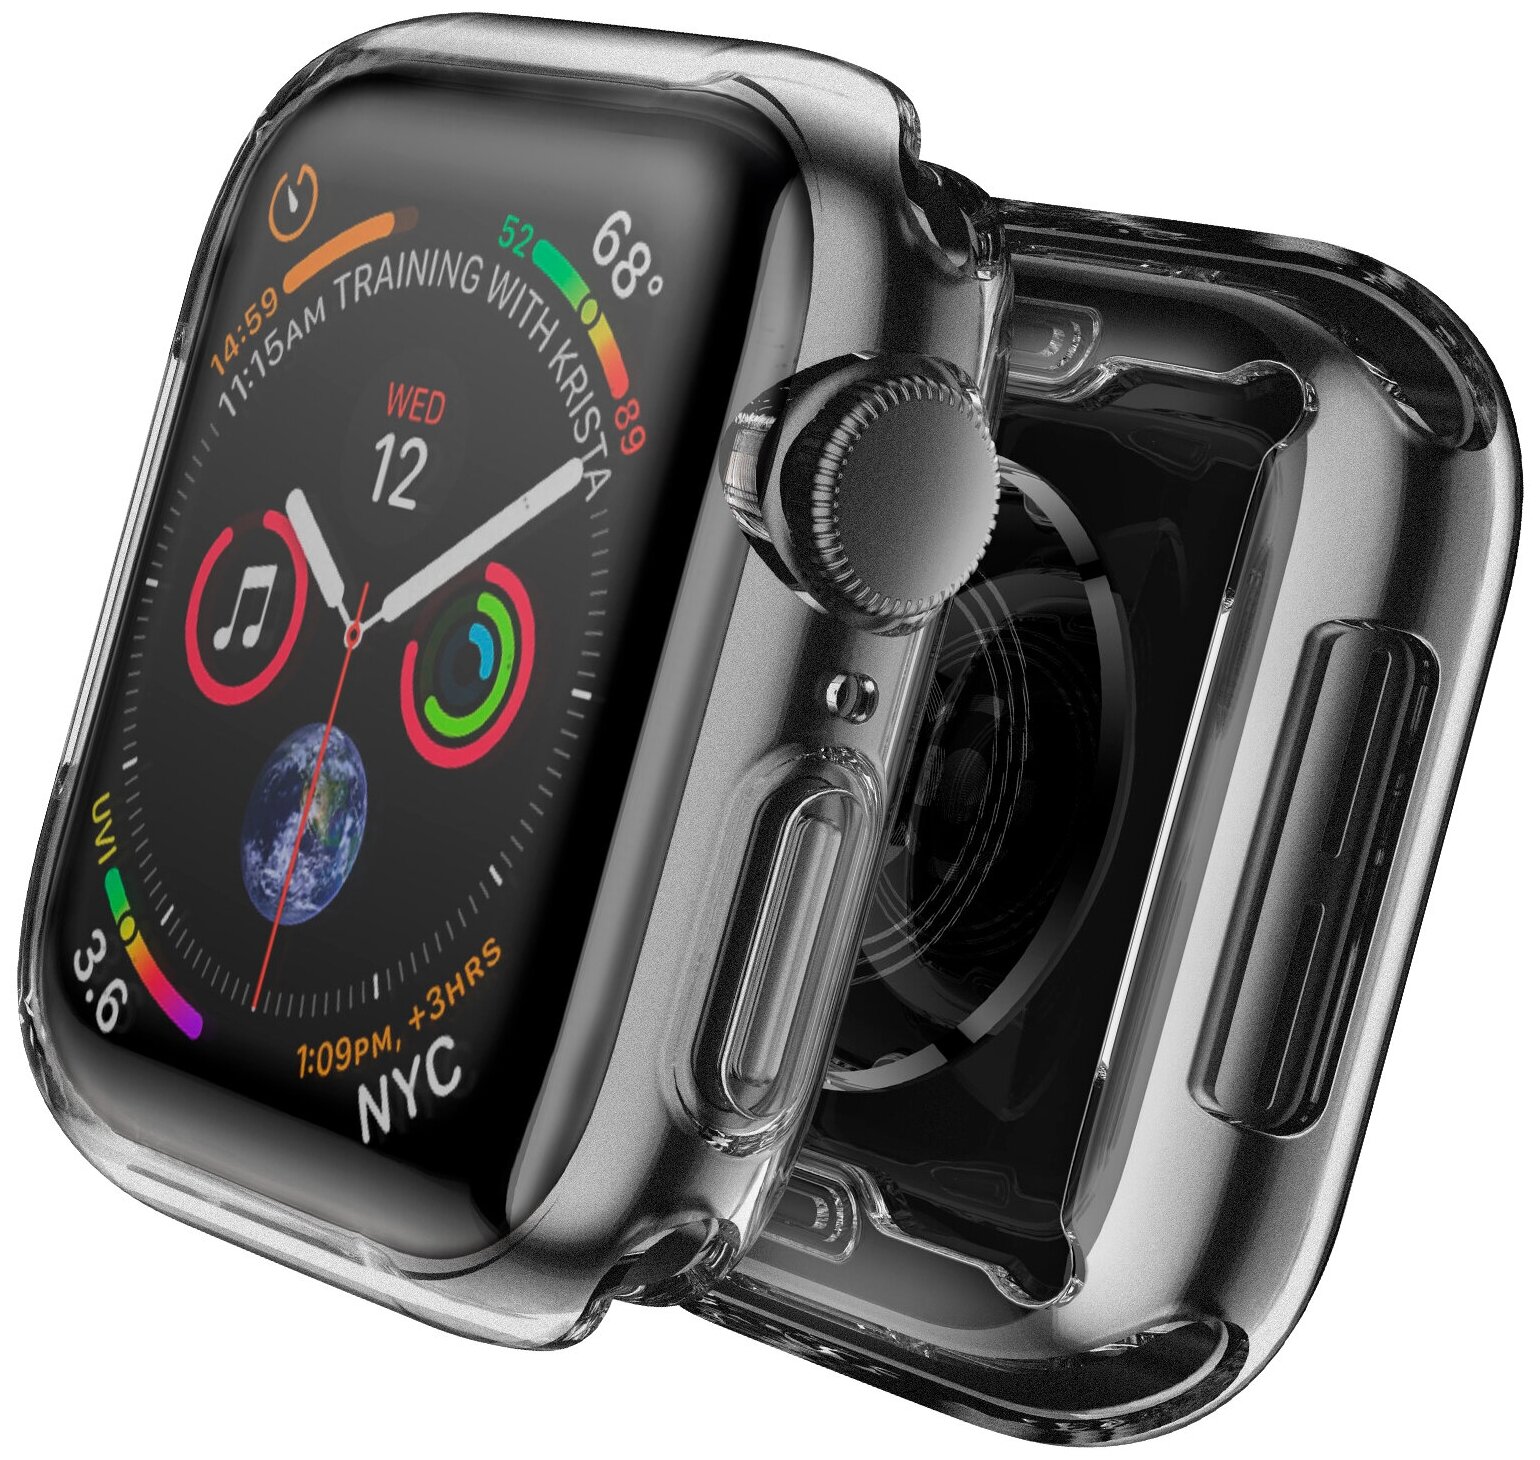 Чехол наарт часы Apple Watch 1/2/3 диагональю экрана 42 Luckroute - Противоударный чехол с защитой от повреждений - Защитный кейс